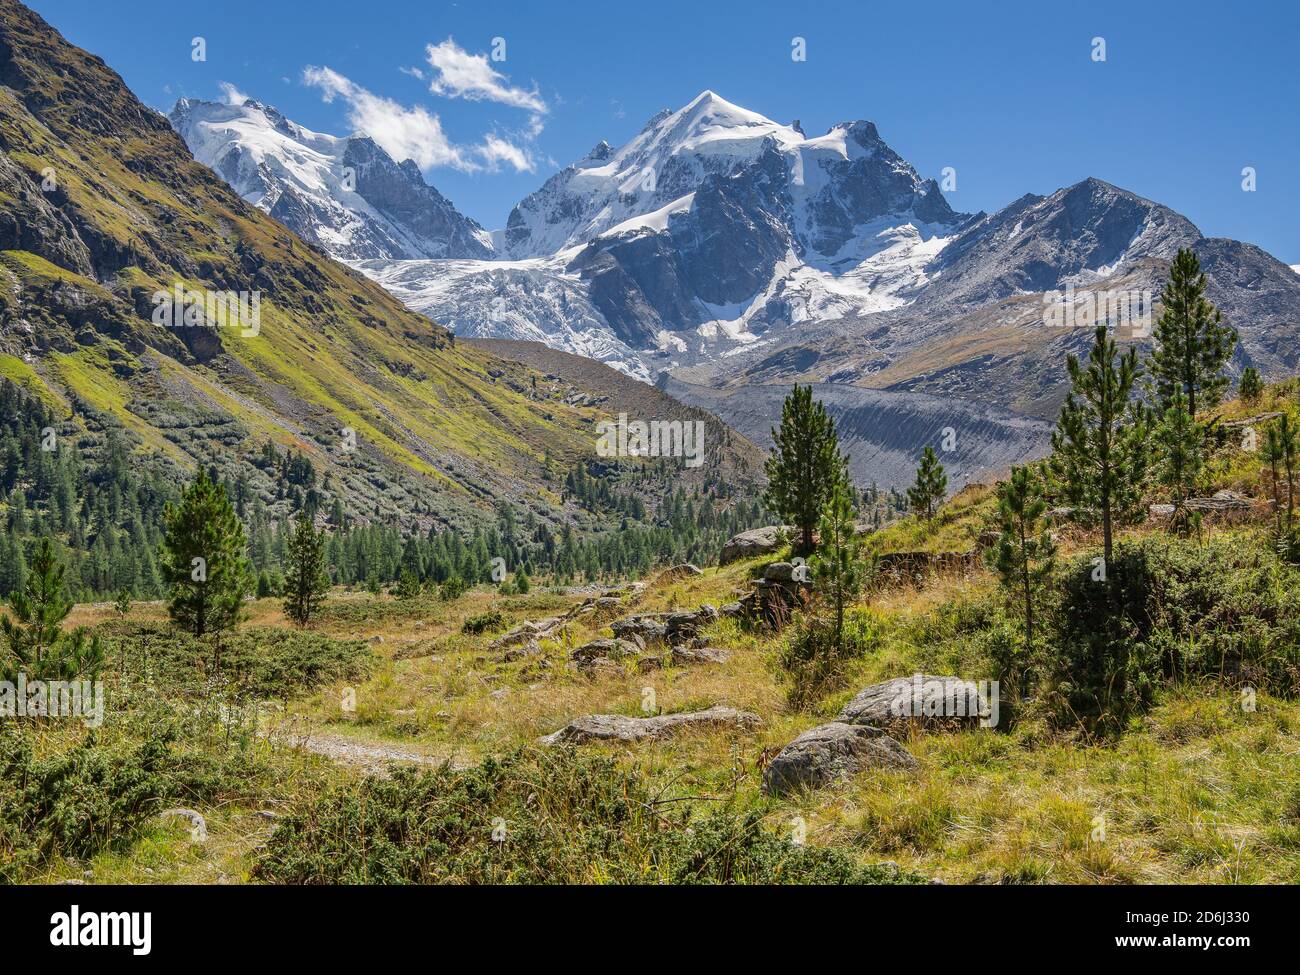 Roseg Valley, Val Roseg with Piz Roseg, Pontresina, Bernina Alps, Upper Engadine, Engadine, Grisons, Switzerland Stock Photo